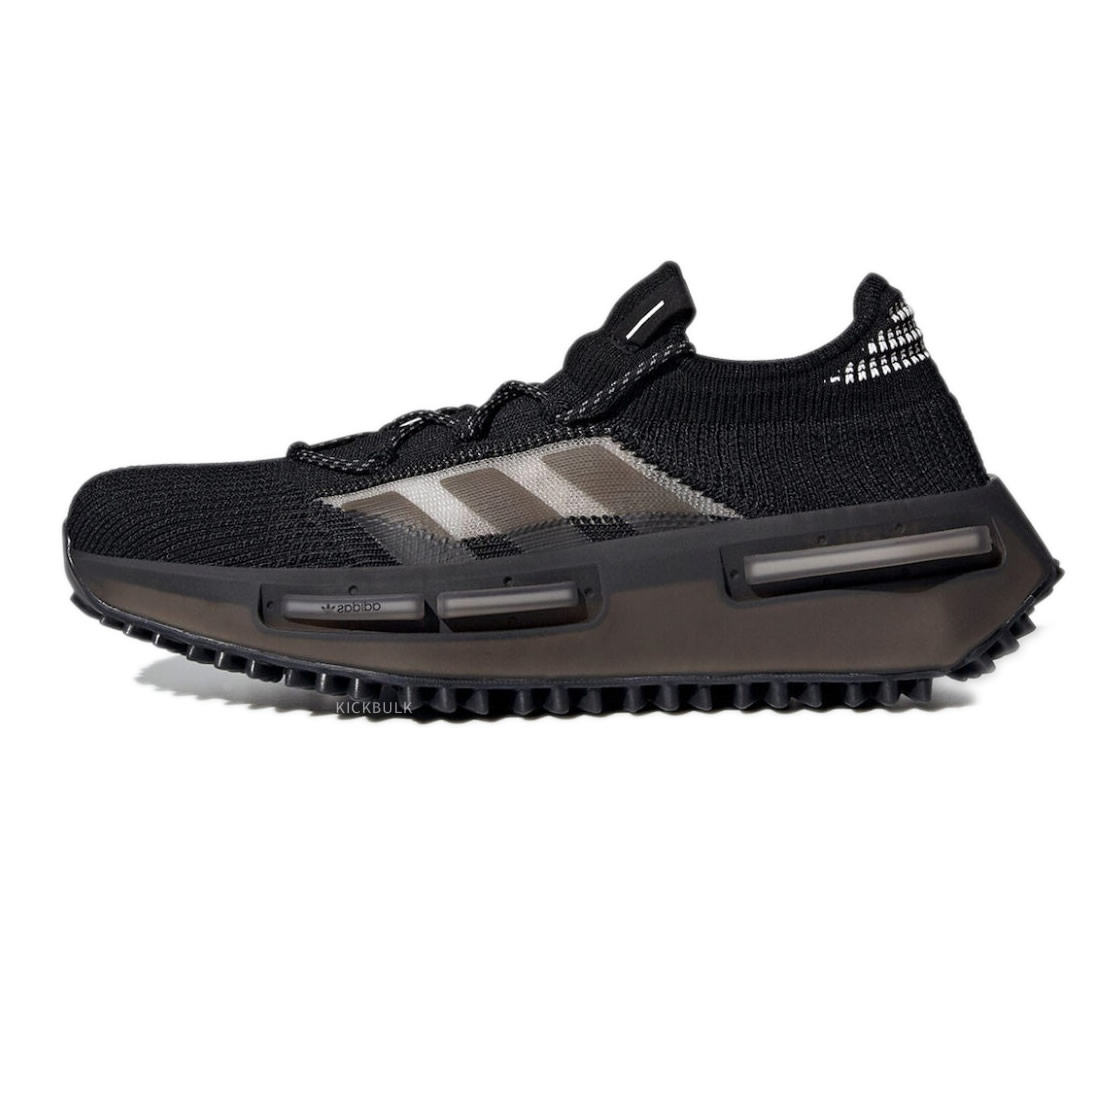 Adidas Nmd_s1 Core Black Gw5652 1 - kickbulk.co